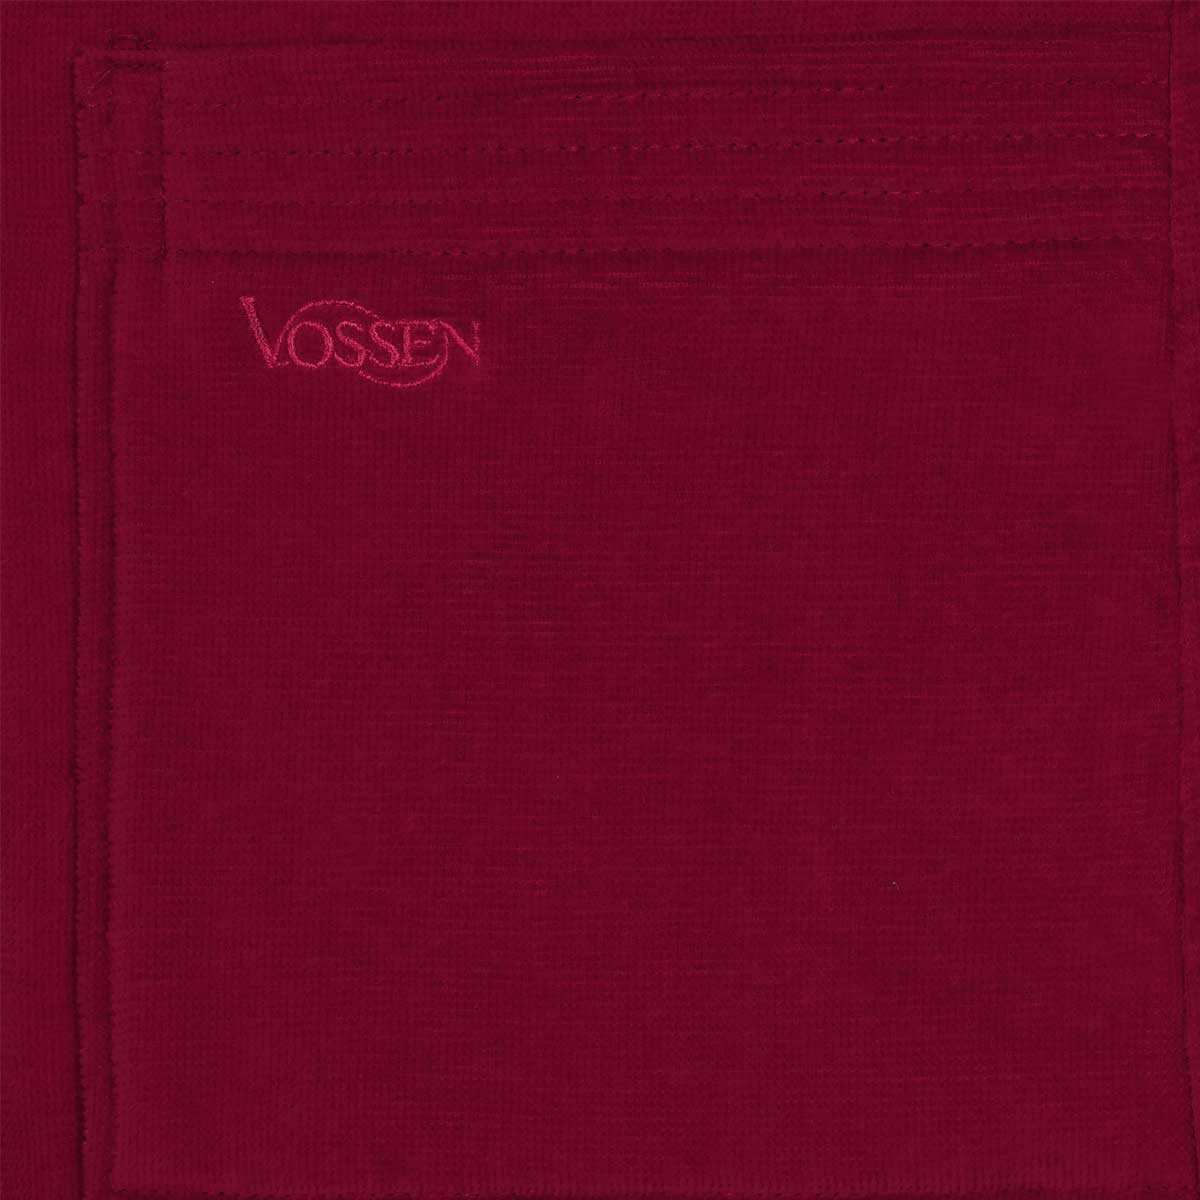 Халат махровый Vossen Texas размер M, темно-бордовый Vossen 7990 05112 3900 4248 M - фото 4